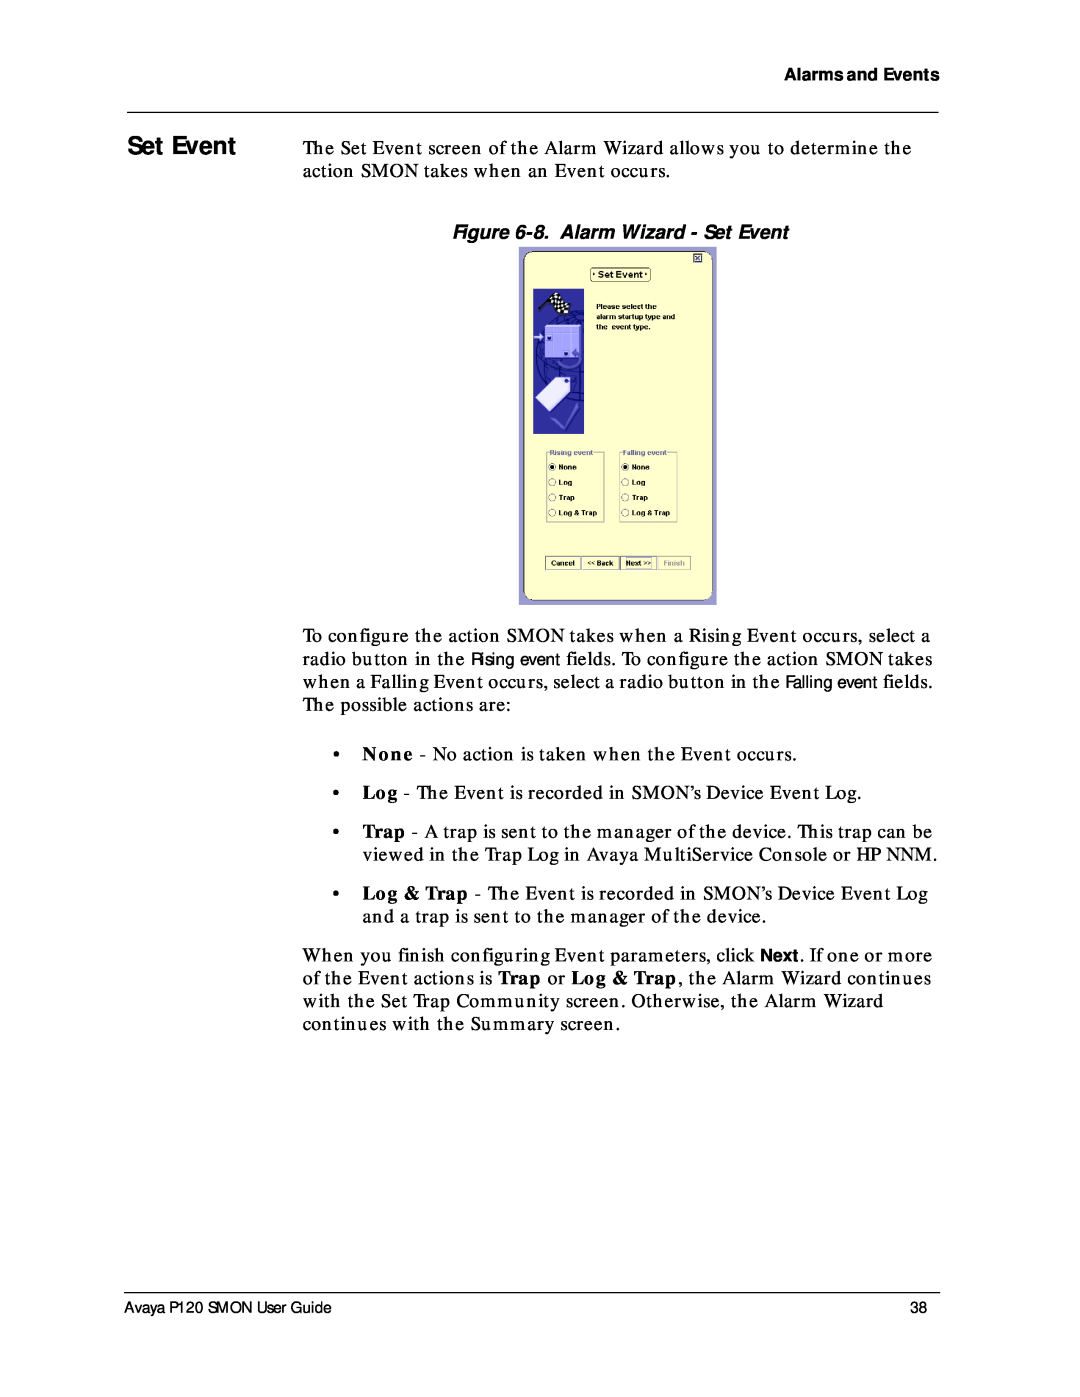 Avaya P120 SMON manual 8. Alarm Wizard - Set Event 